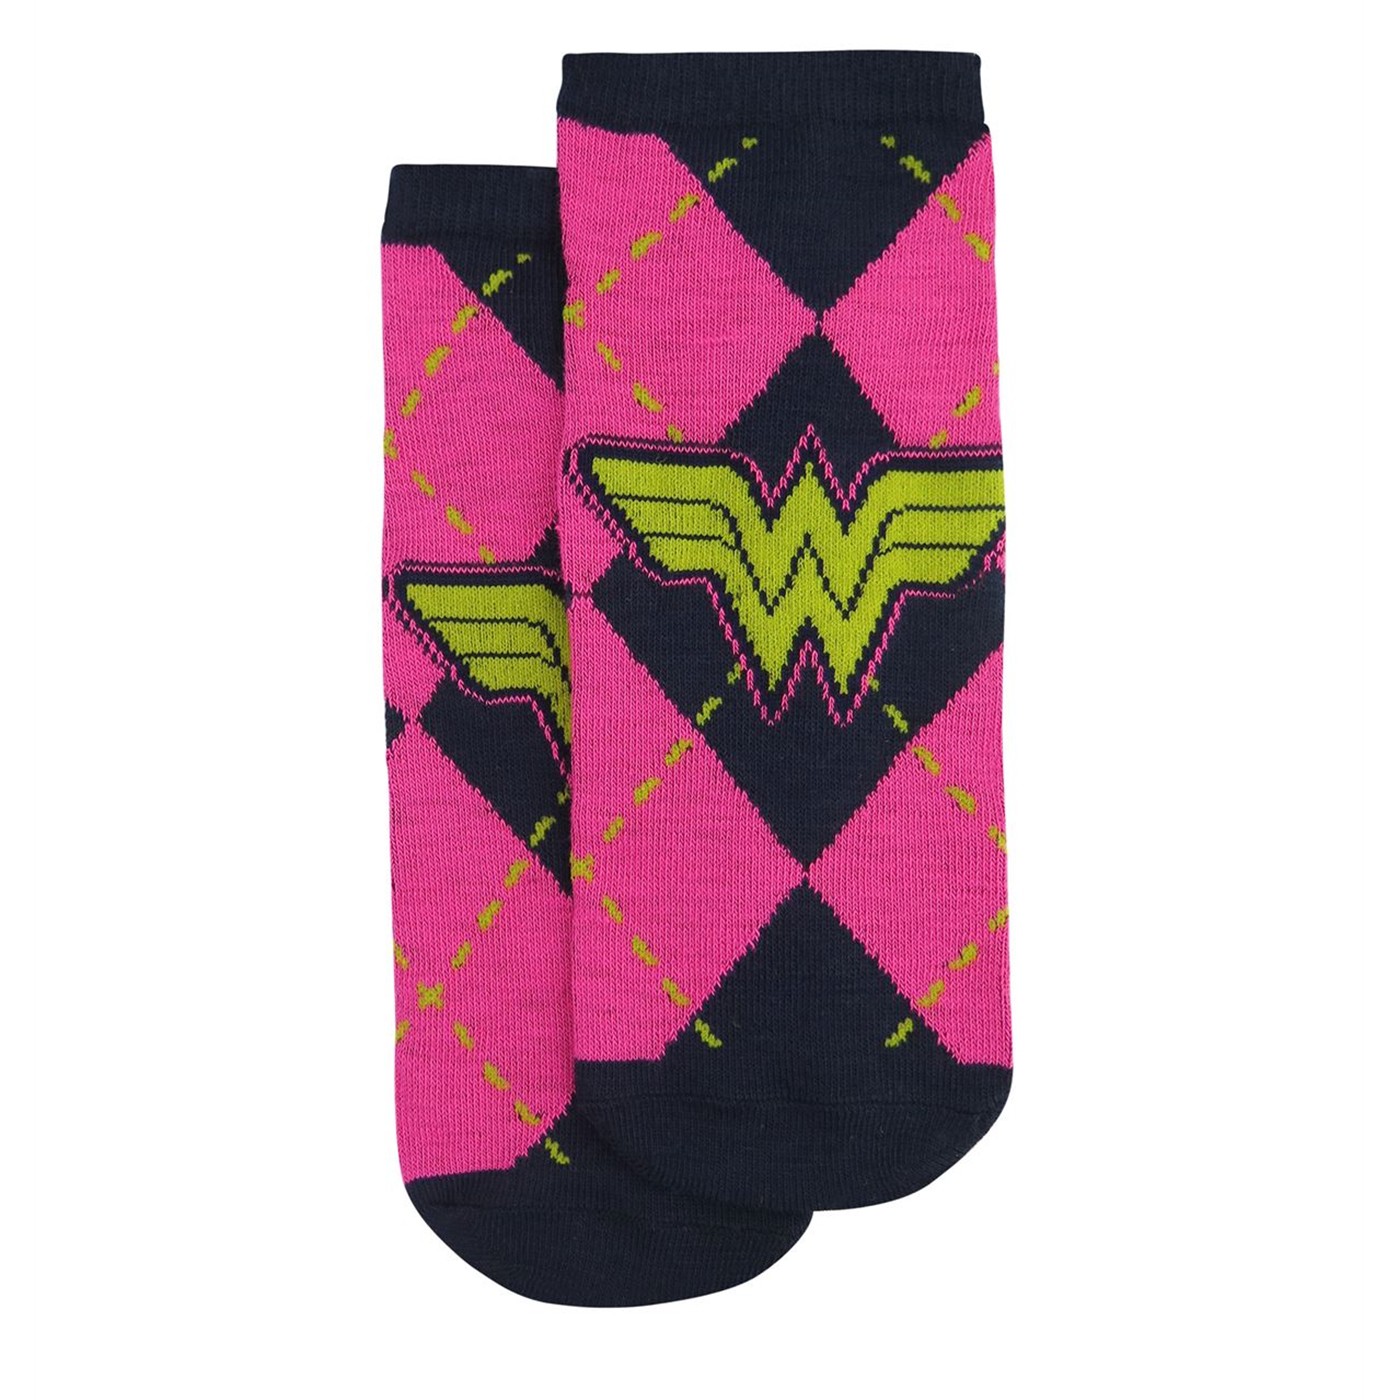 Wonder Woman Neon Women's Low Cut Sock 5-Pack